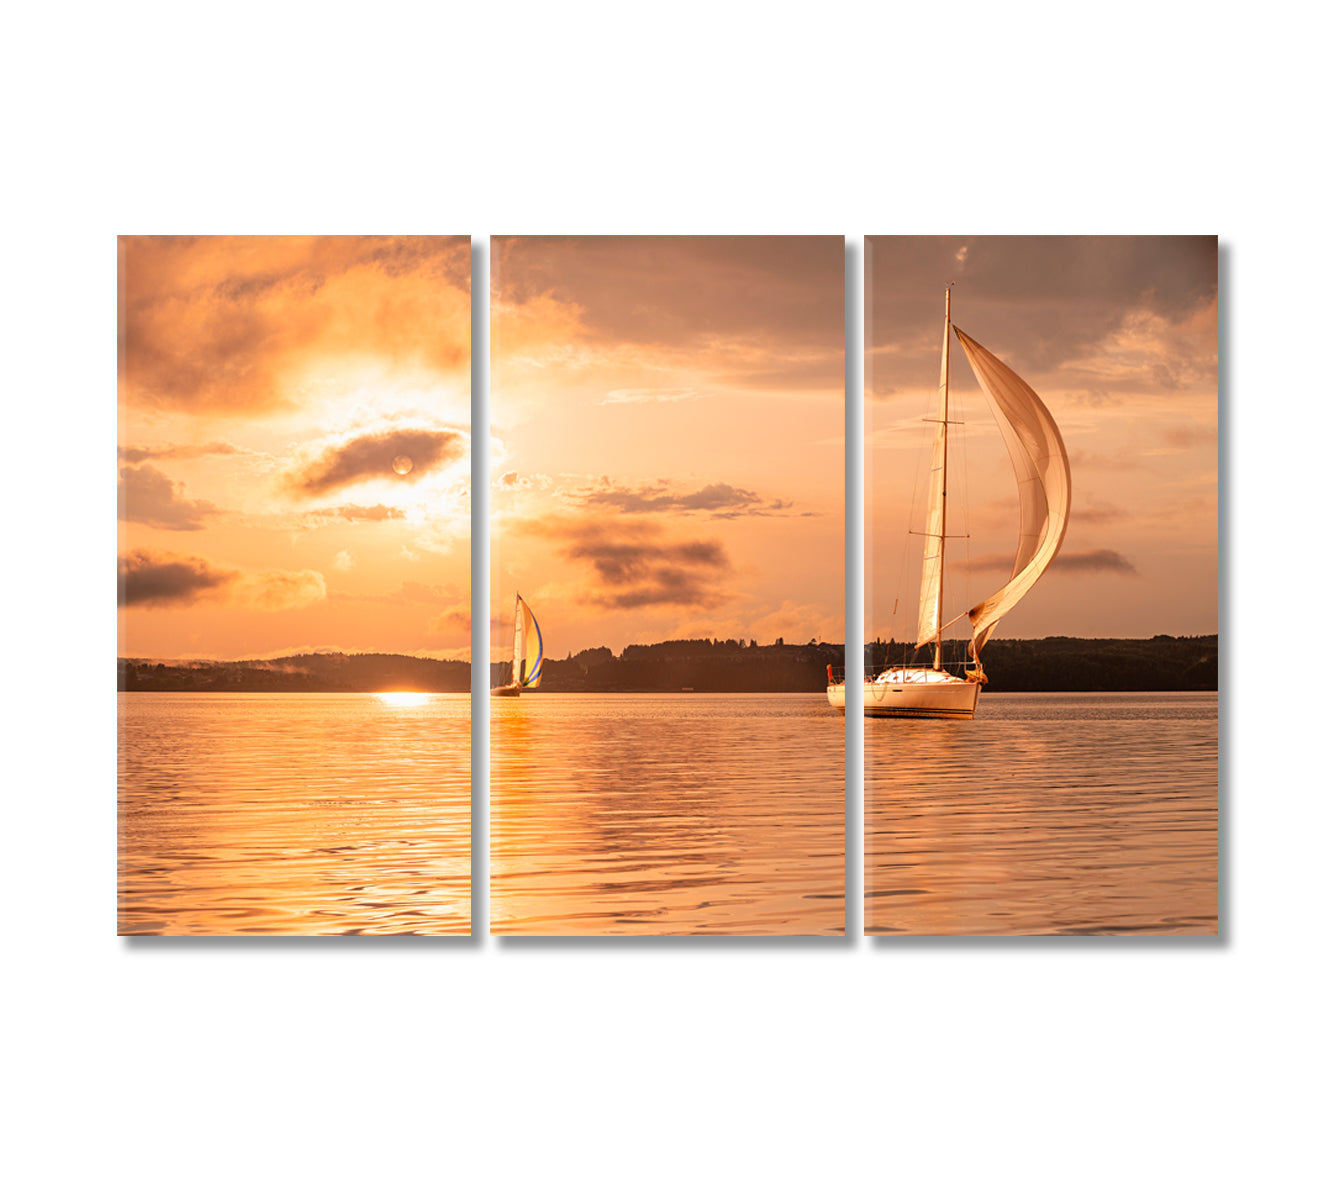 Sailing Yacht at Incredible Sunset Canvas Print-Canvas Print-CetArt-3 Panels-36x24 inches-CetArt